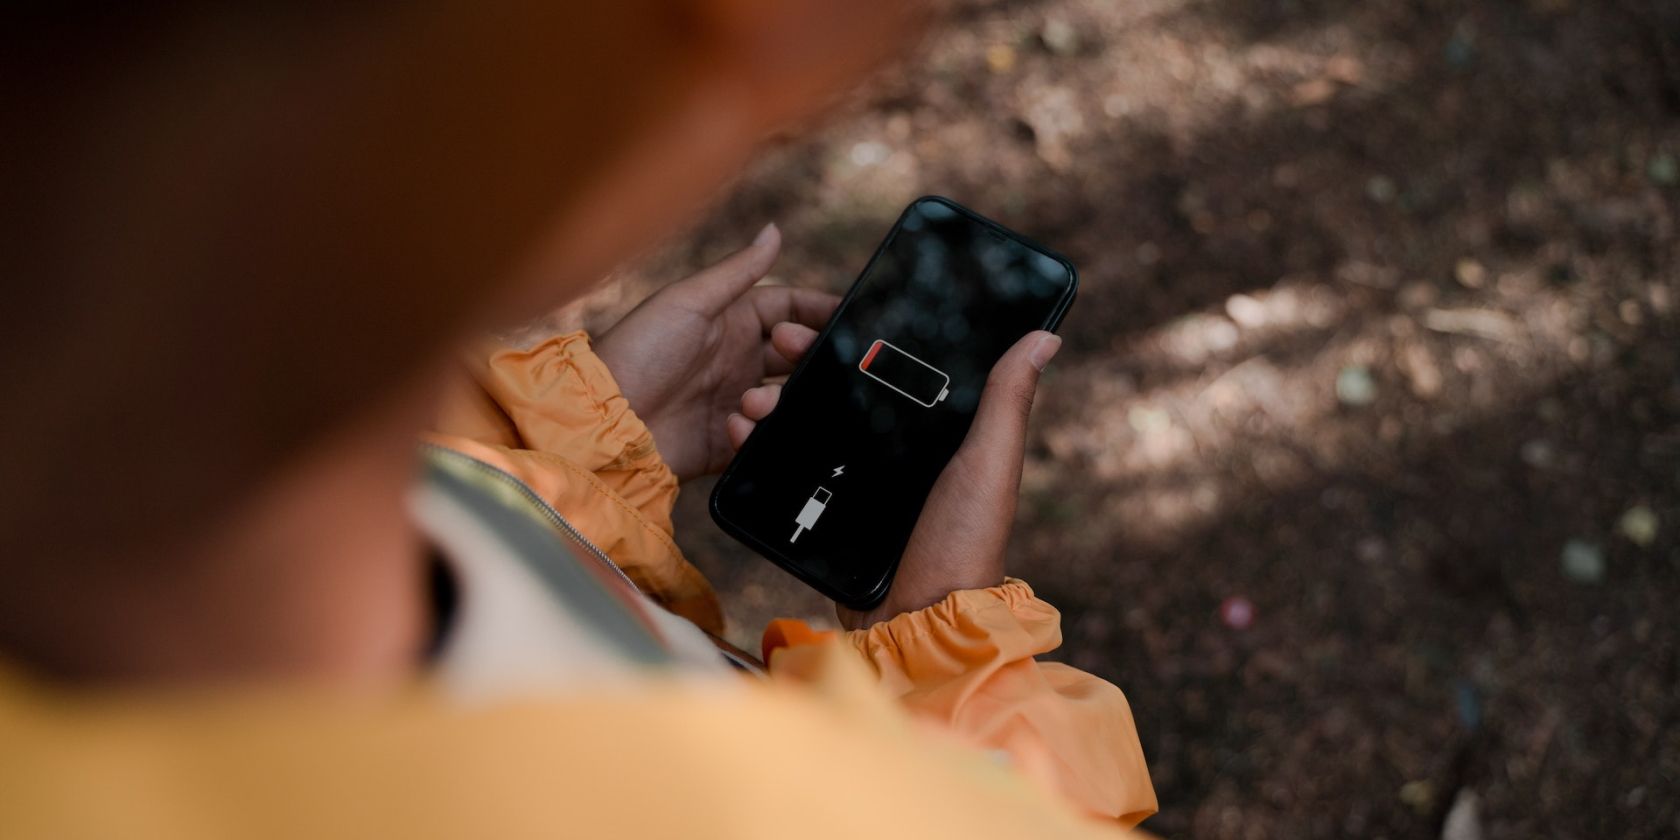 um iPhone com bateria descarregada indicando que o usuário deve carregar